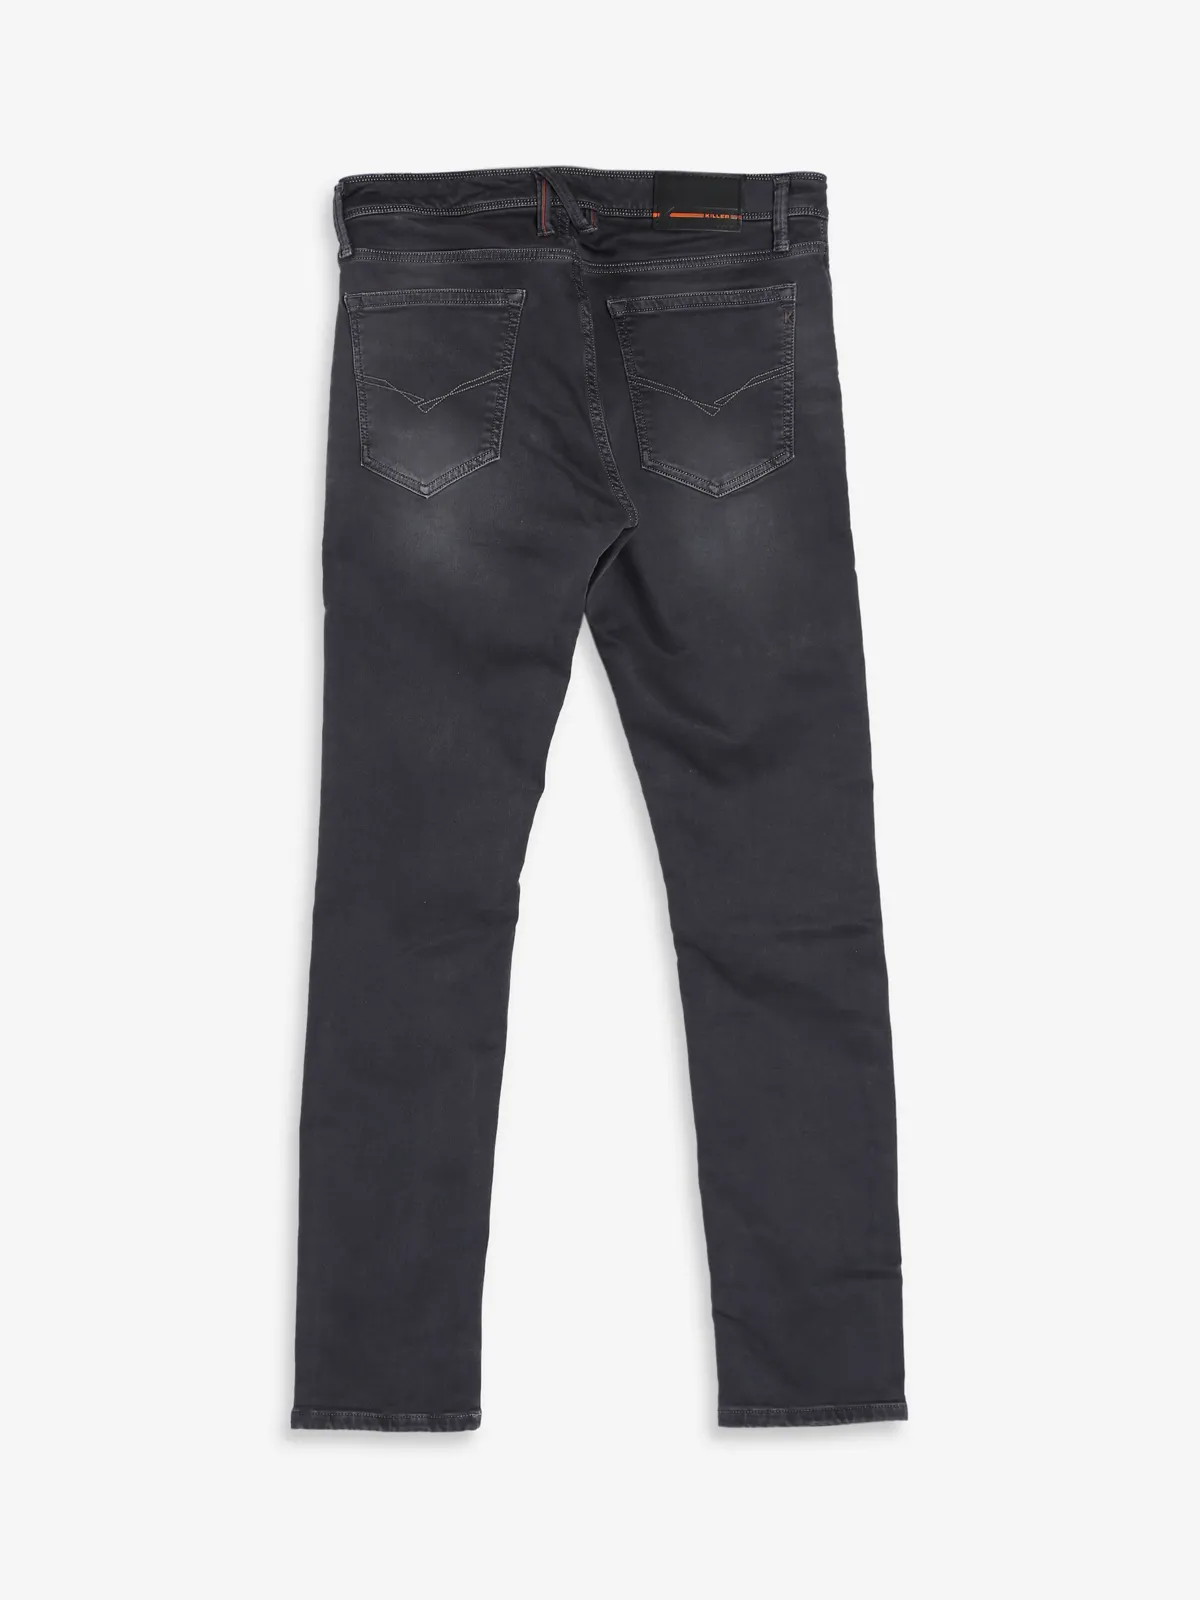 Killer dark grey skinny fit jeans